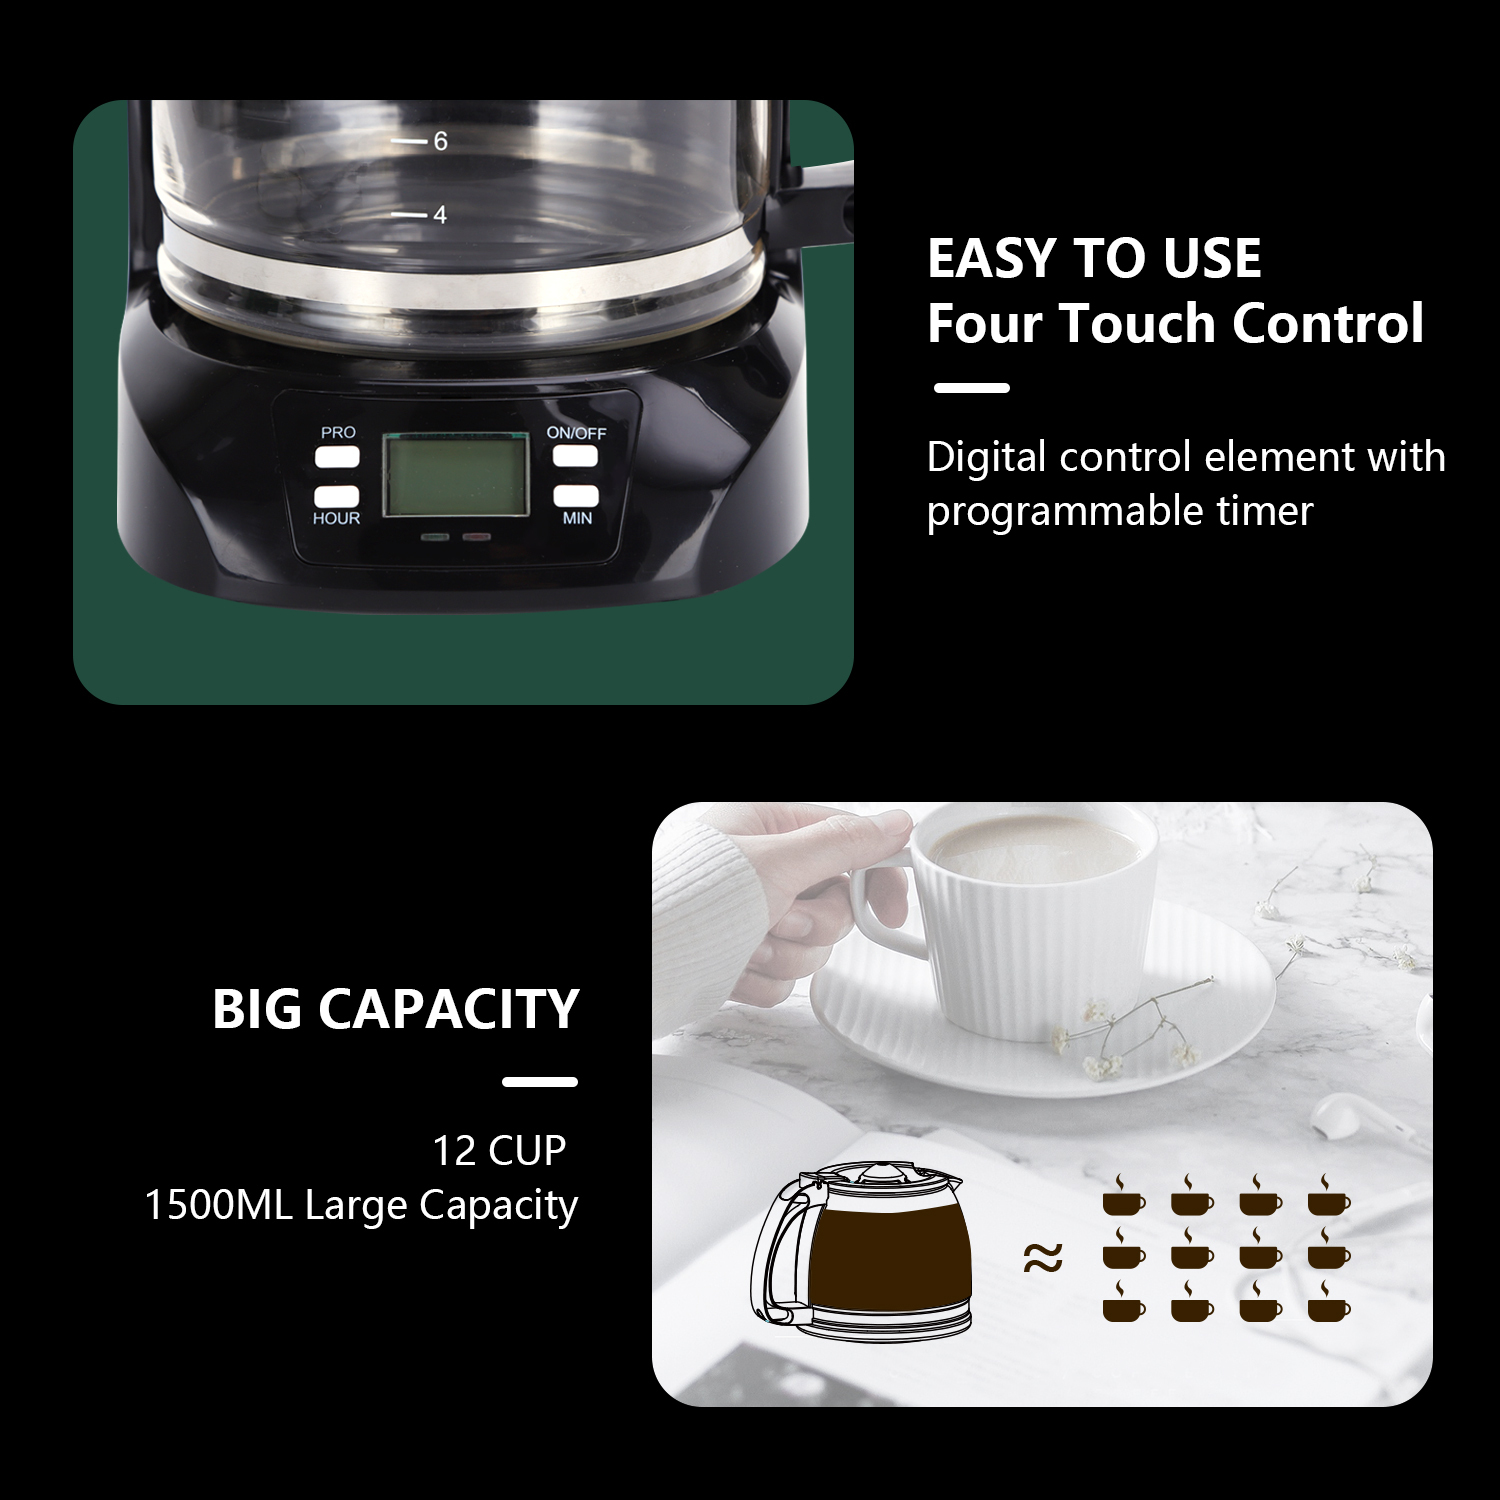 Aigostar Benno - Cafetière filtre programmable jusqu’à 24h. 800 W, 1,5L (12 tasses). Écran LCD, système anti-goutte, maintien au chaud 40min. 0% BPA.